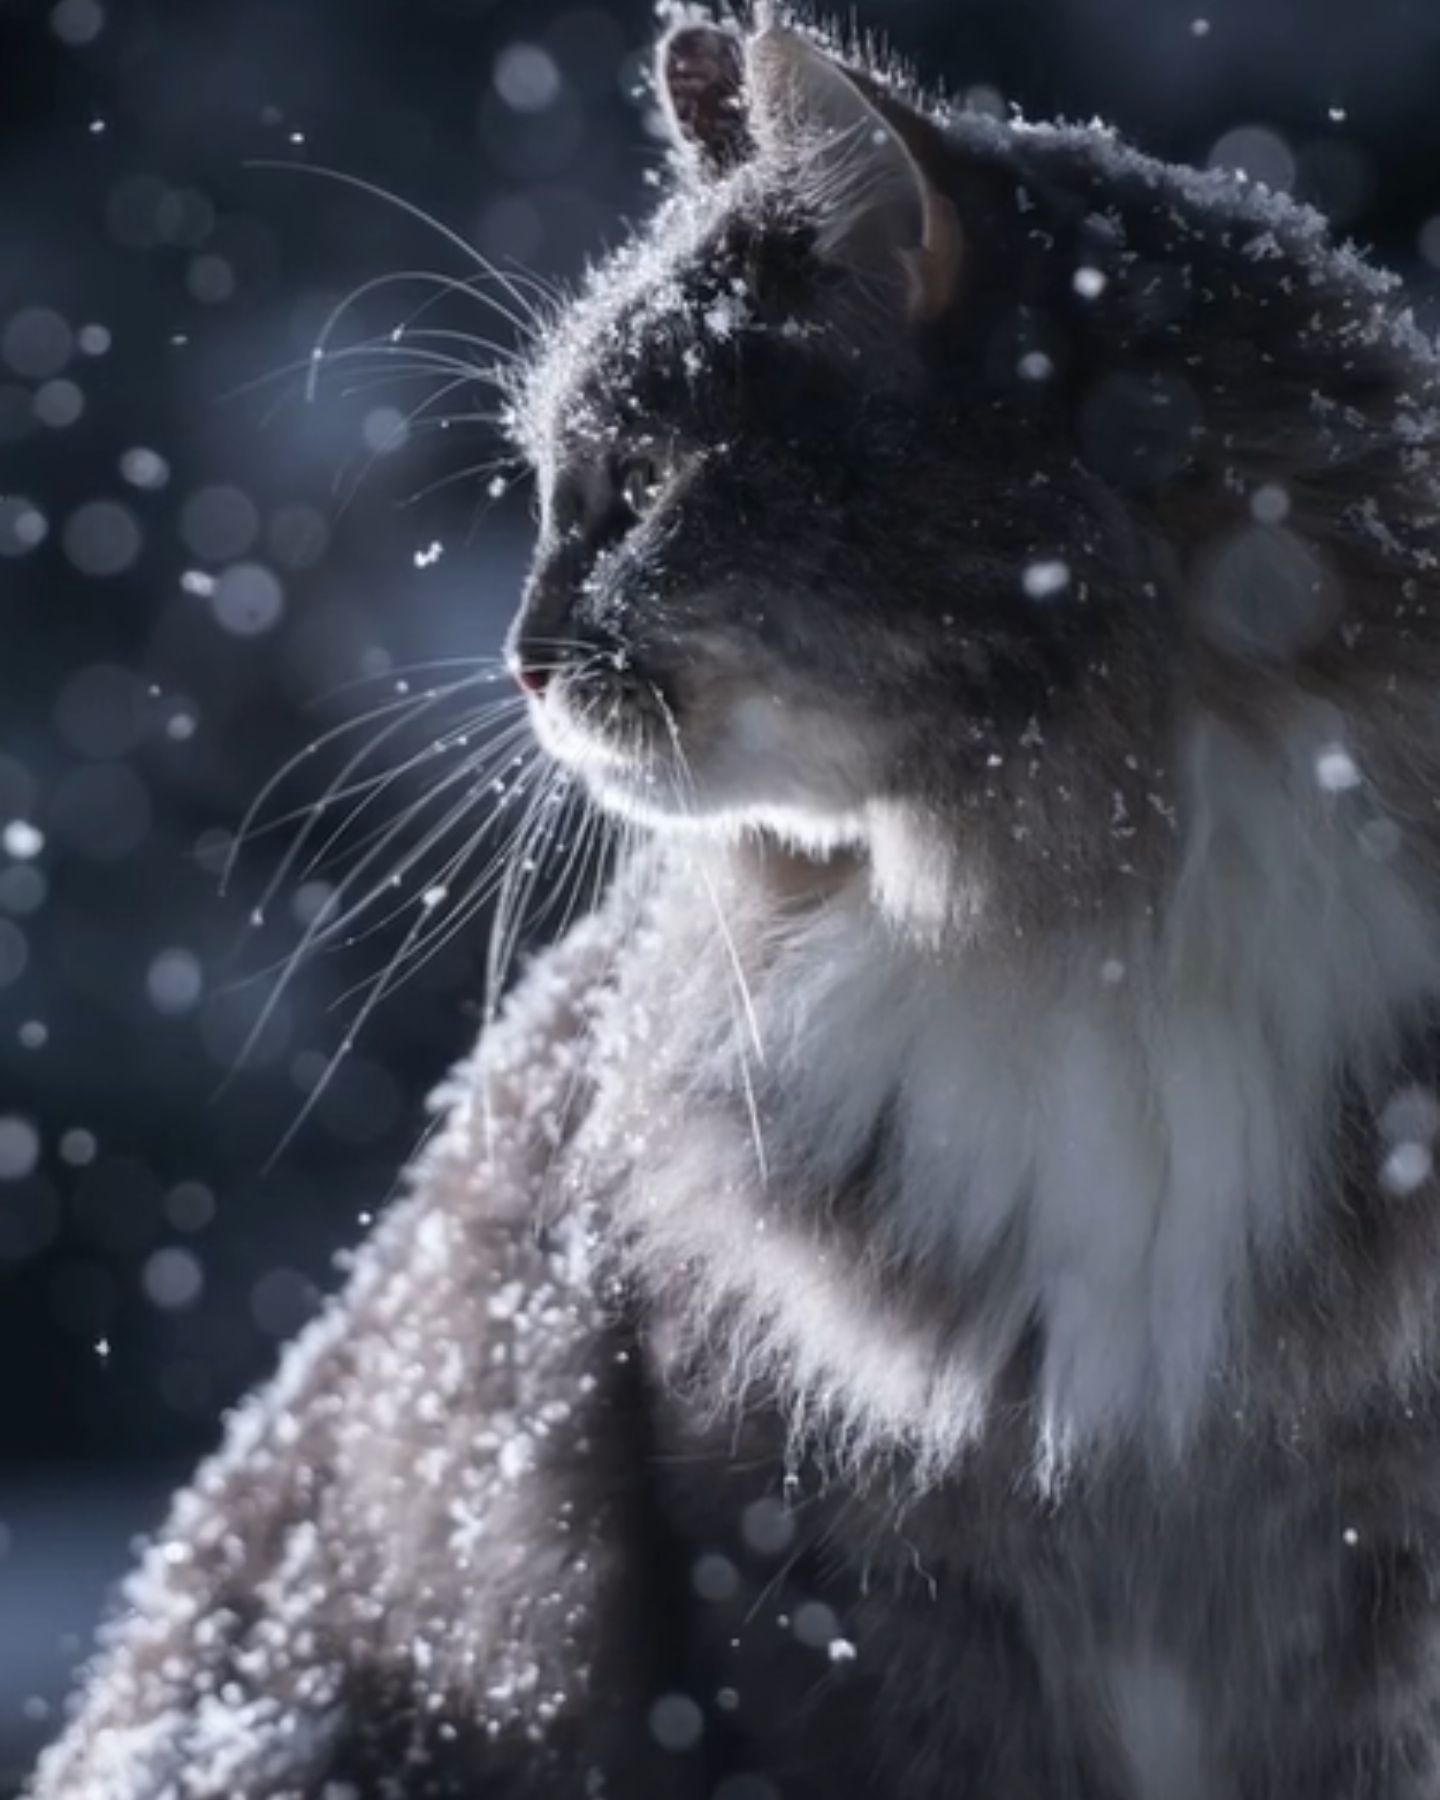 Cute cat in snow